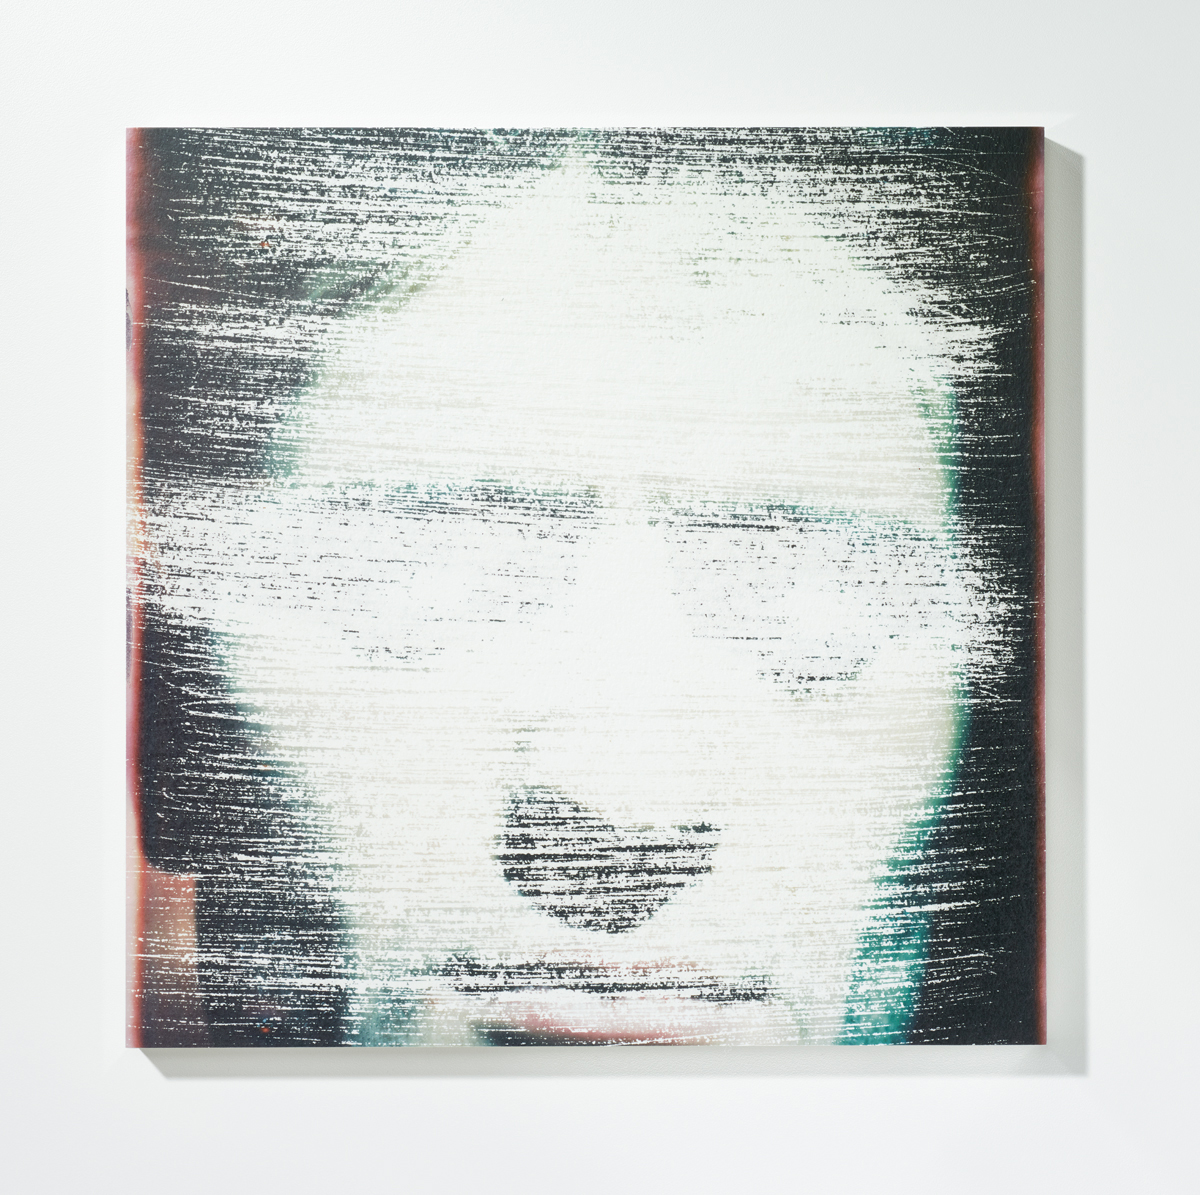 Löschung 8, 201630 x 30 cmPigmentprint, gelöscht, gefirnisst, kaschiert auf Acrylglas